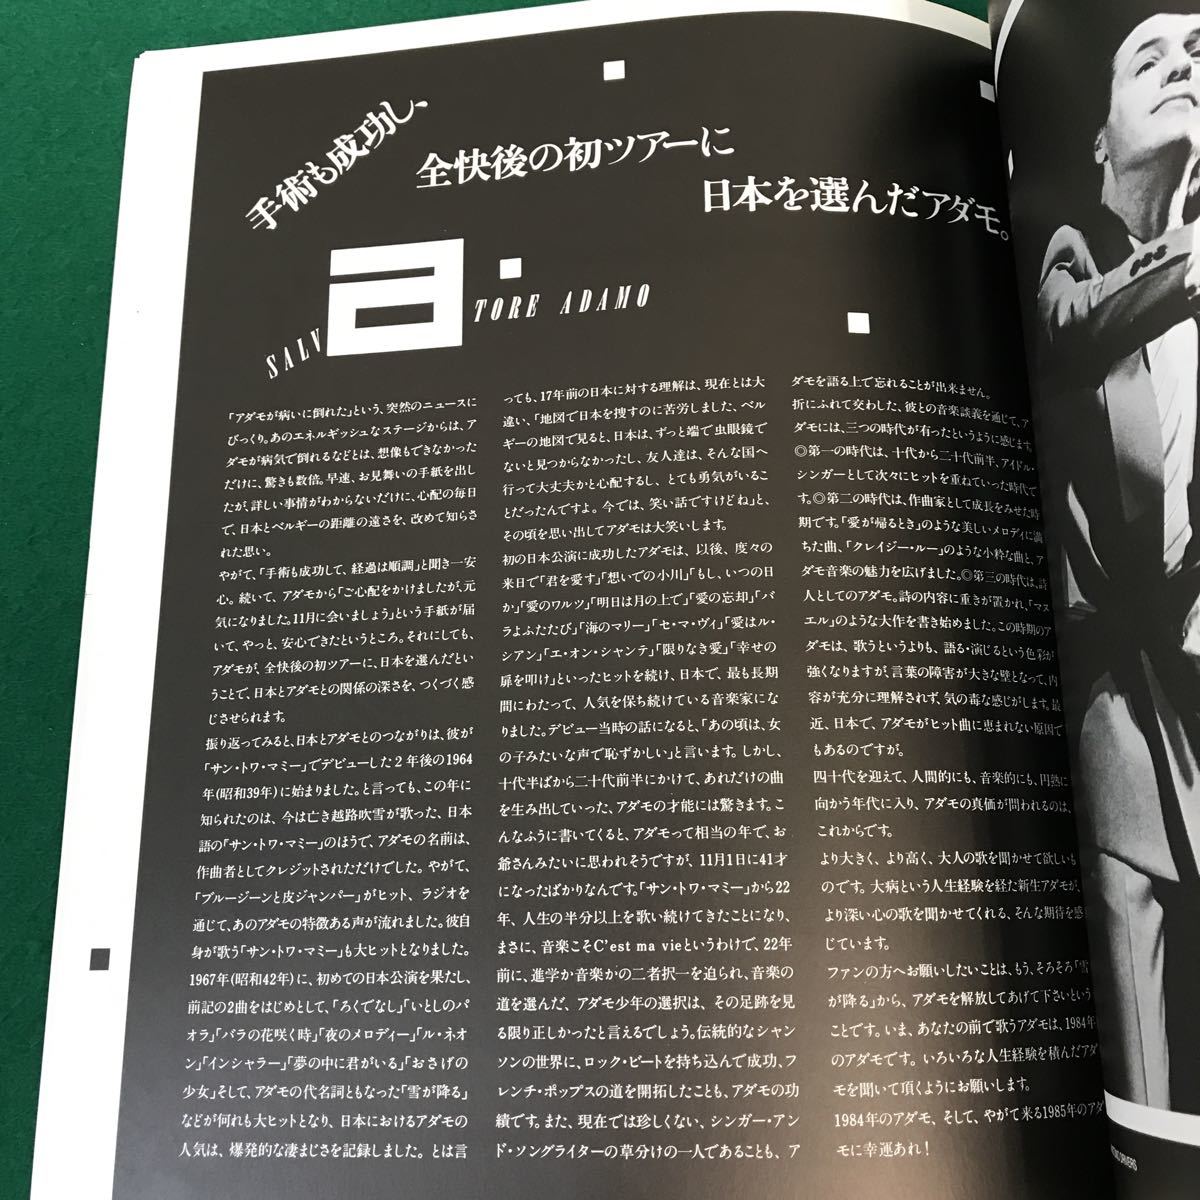 A02-215 本。ADAMO ADAMO JAPAN TOUR 1984 アダモの作品集・愛から愛ヘ・伝わせておけよ・君を愛す・他。ツアー写真集。_画像4